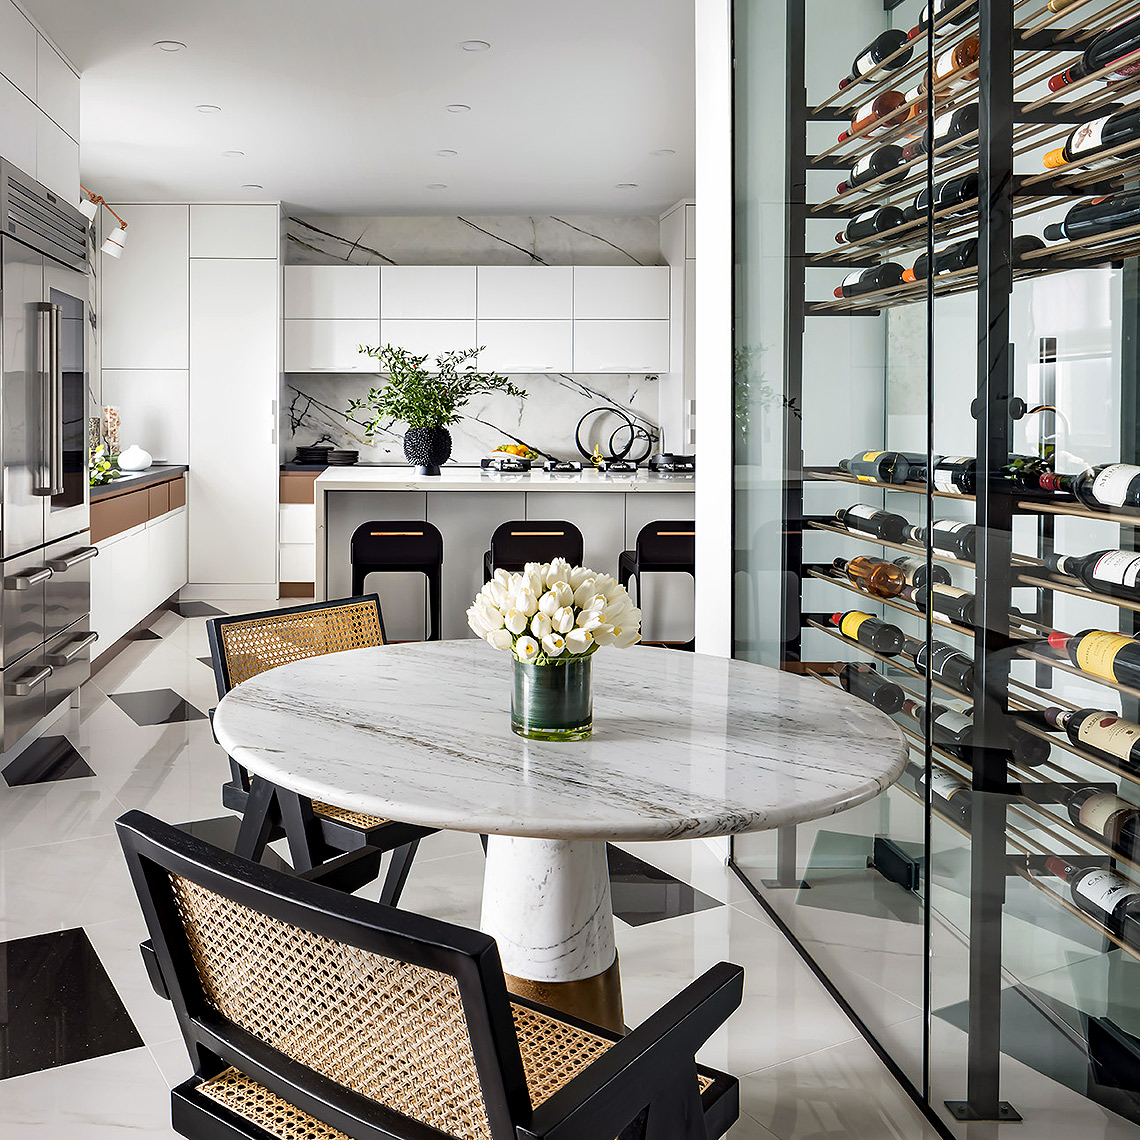 Modern Kitchen sitting area and wine fridge designed by Iman Lalji